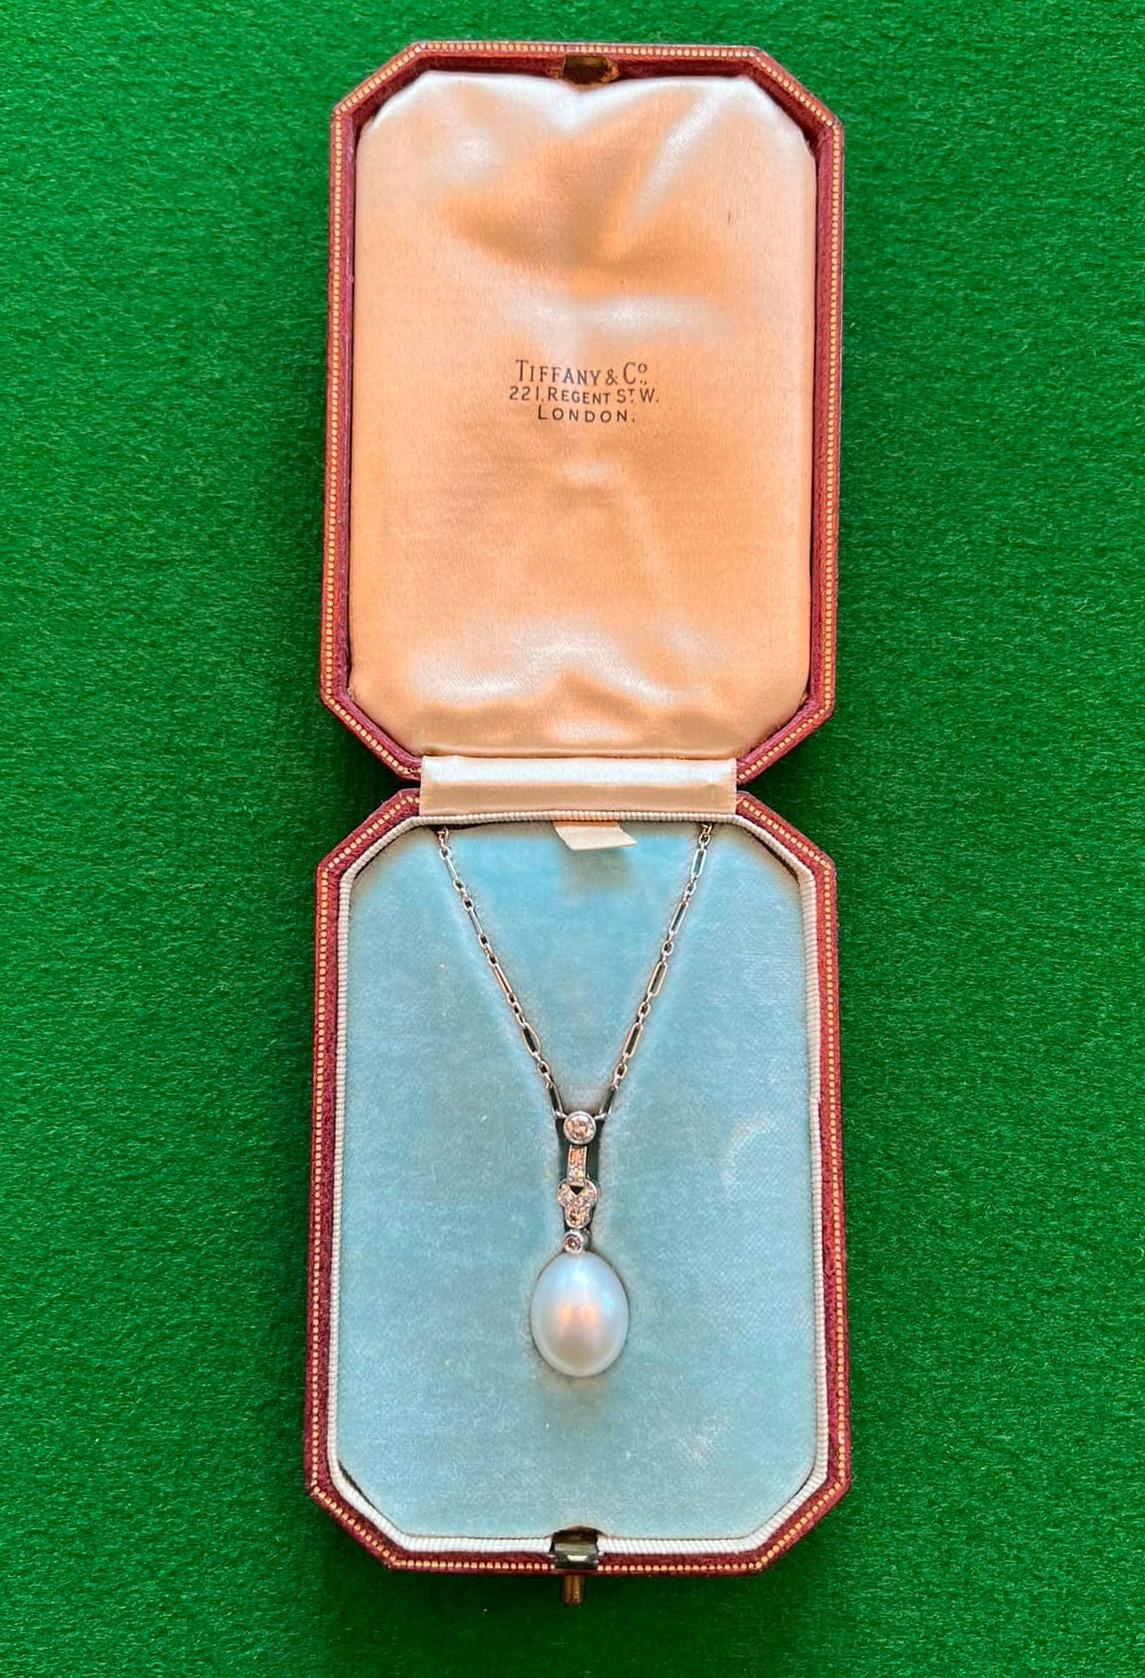 Royal House Antiques

Royal House Antiques freut sich, diese exquisite Art Deco-Halskette mit Diamanten und Perlen aus Platin von Tiffany & Co aus den 1920er Jahren zum Verkauf anzubieten.

Ein wirklich atemberaubendes Stück, die Kette und Fassungen